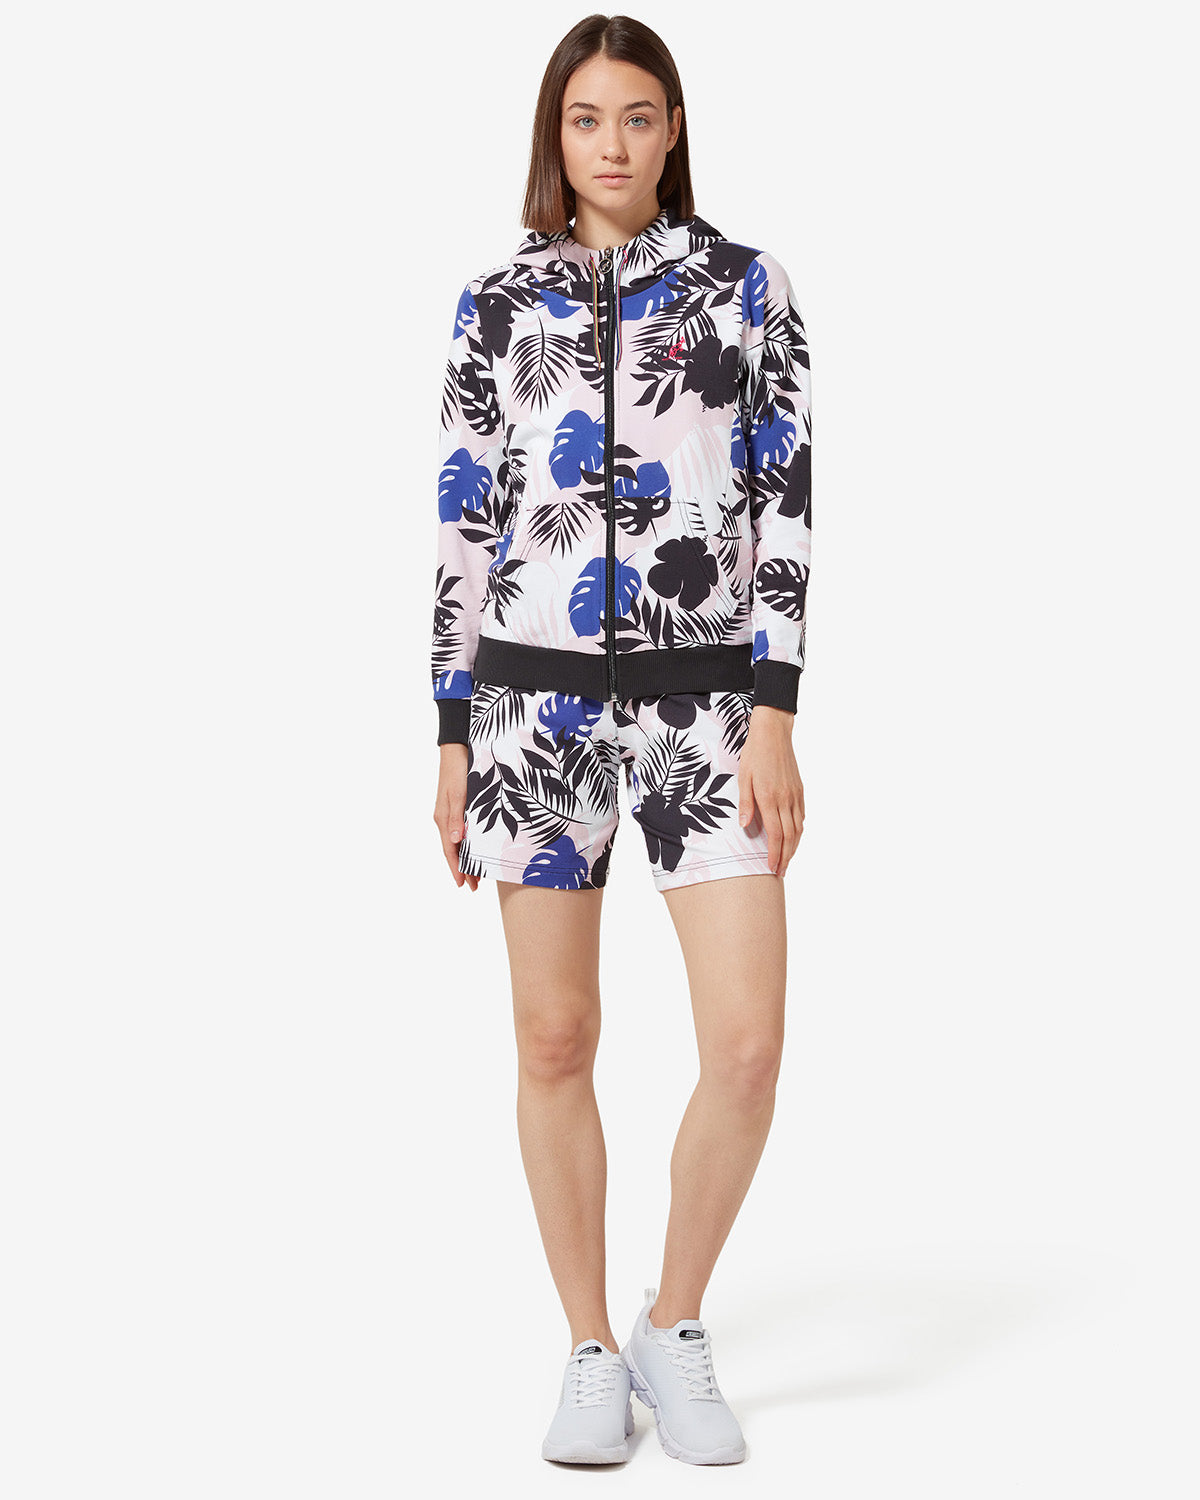 Flowers Shorts: Australian Sportswear